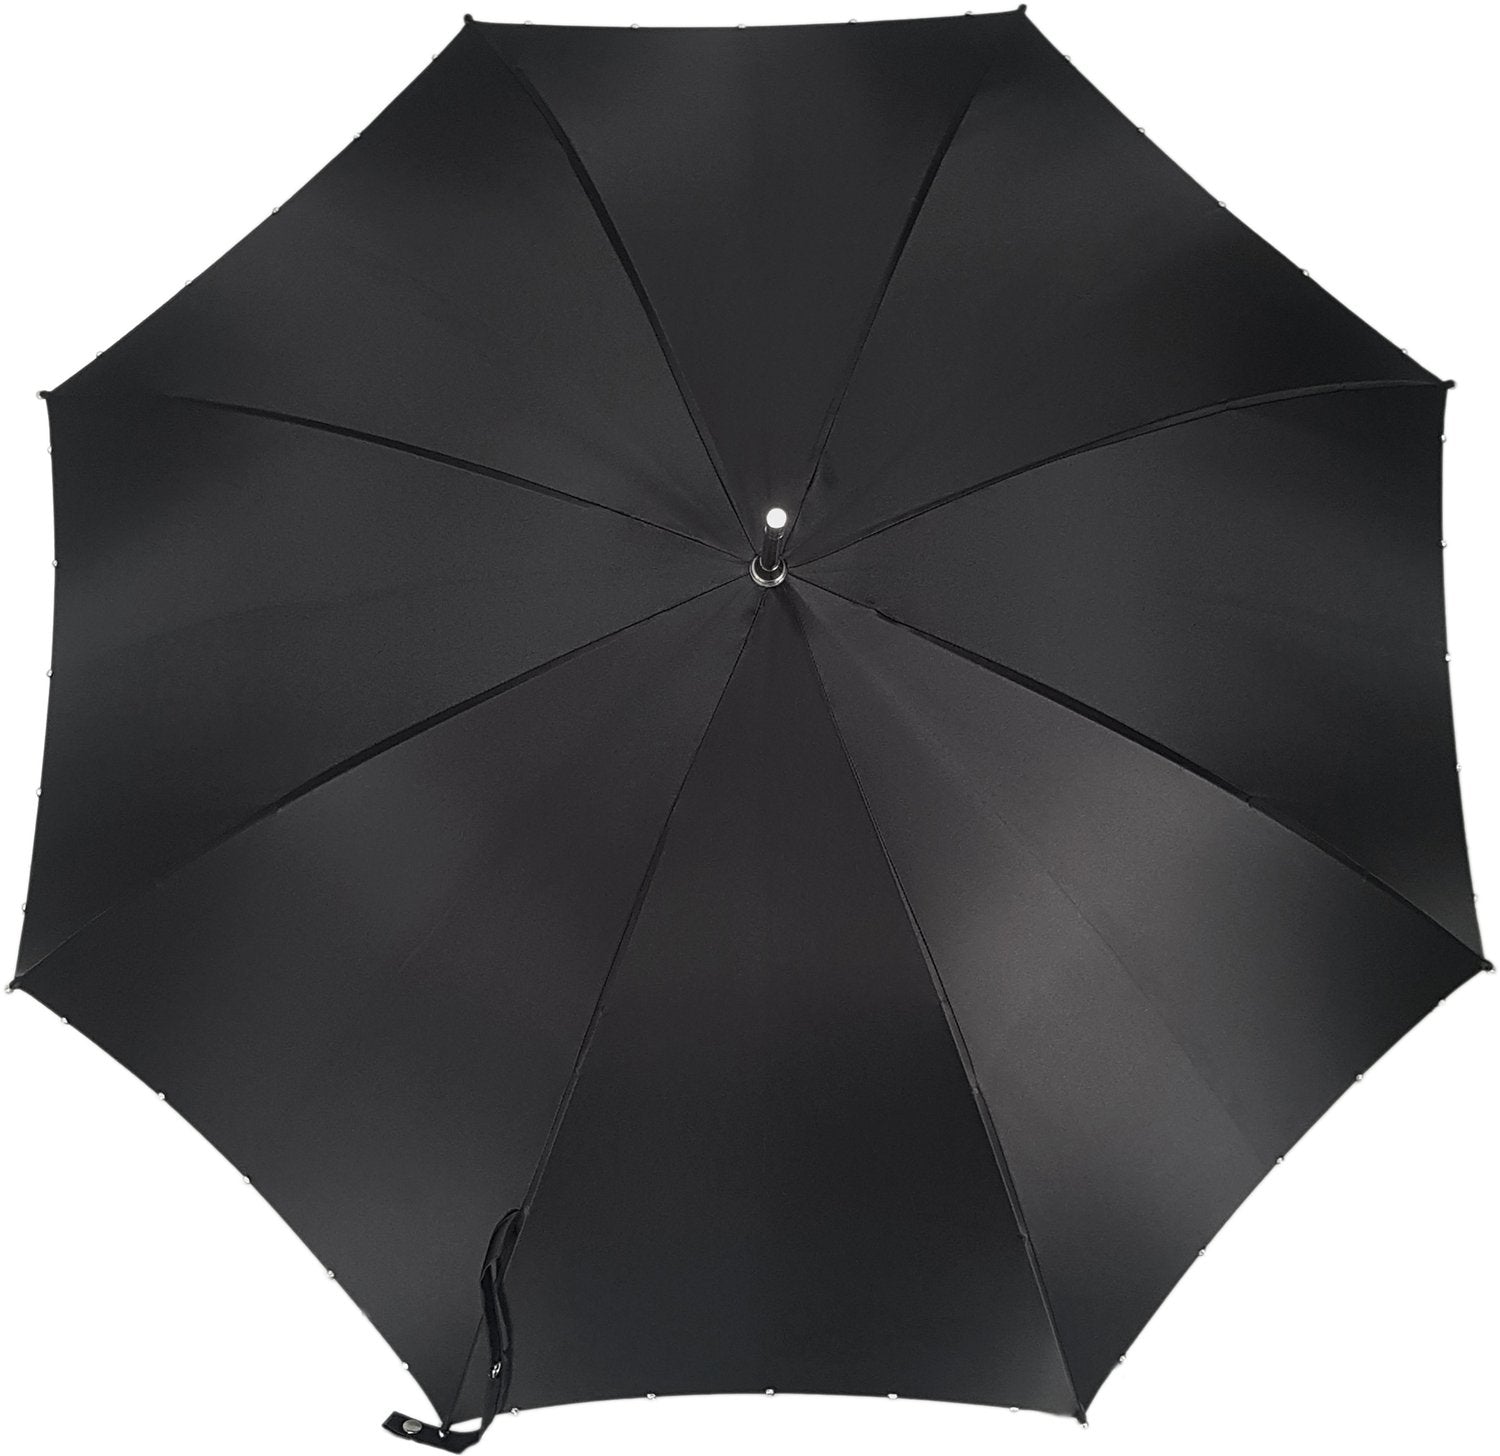 Handcrafted Luxury Umbrella in a Black Color - il-marchesato